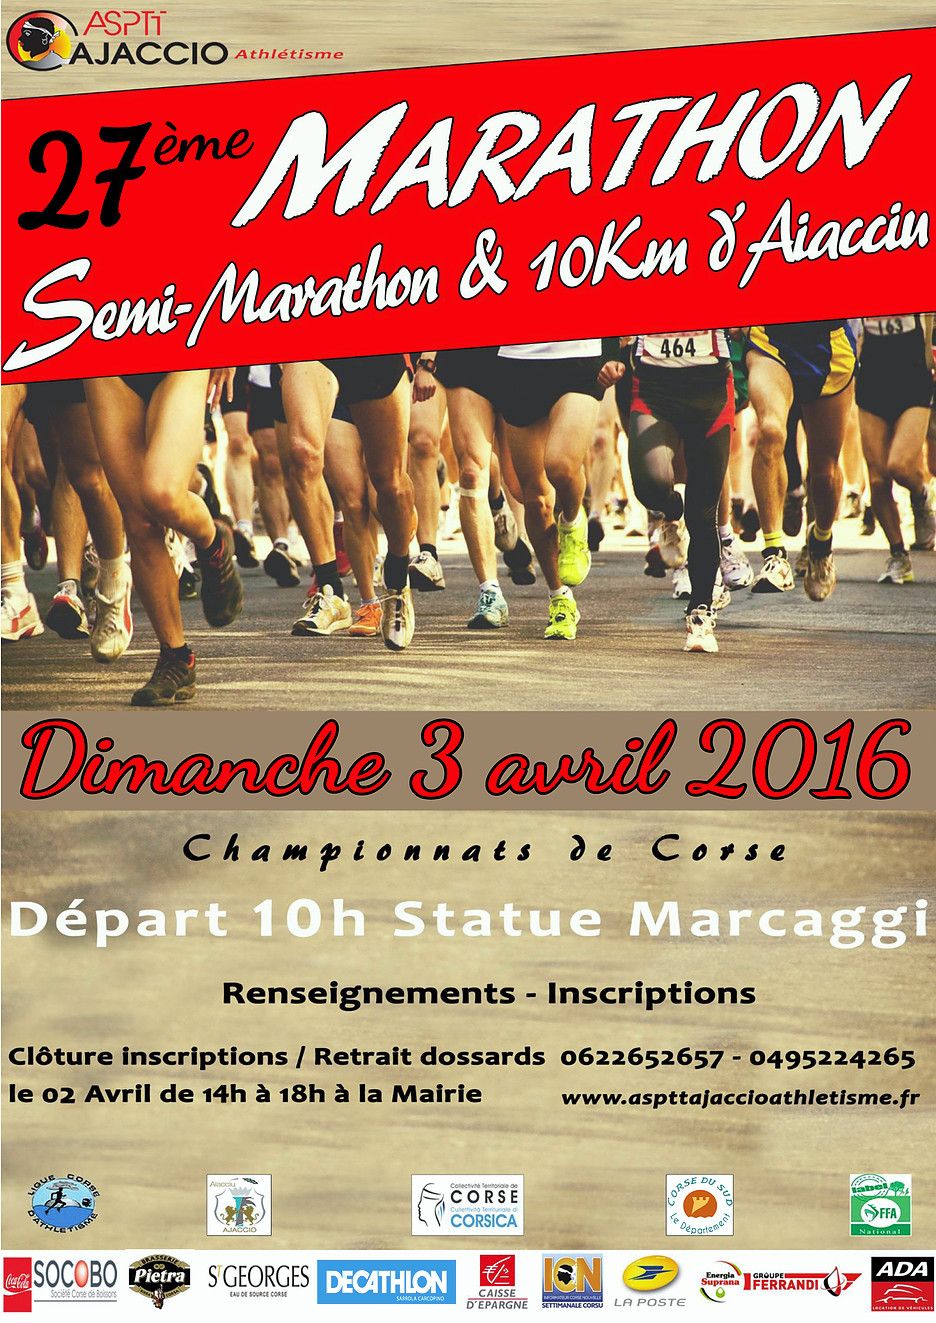 Le marathon d'Ajaccio, édition 2016